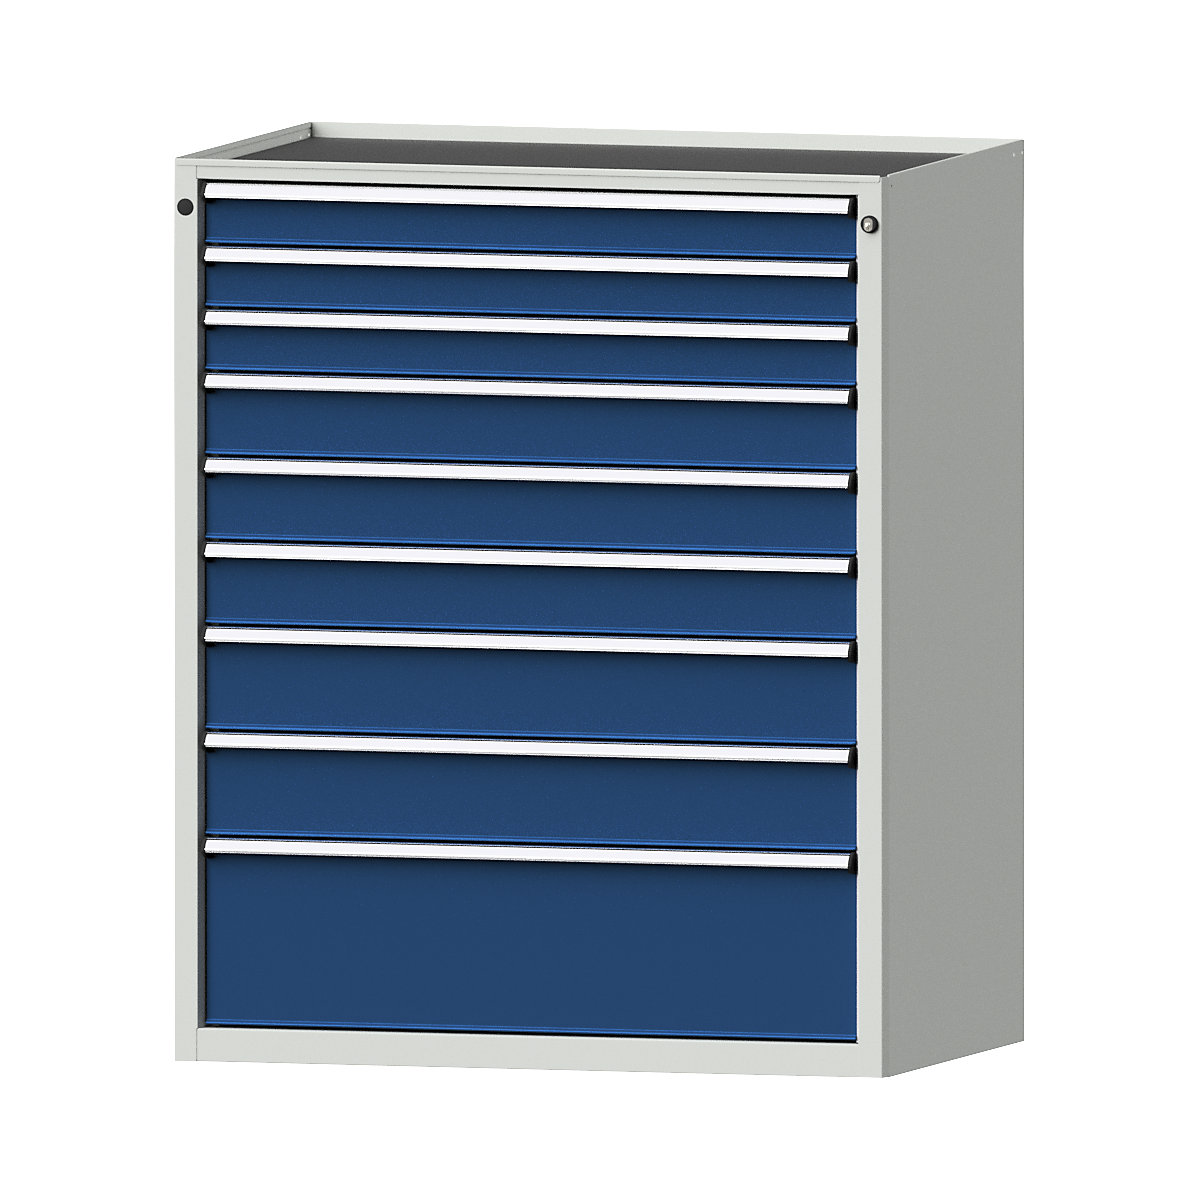 Armoire à tiroirs – ANKE, l x p 1060 x 675 mm, charge max. tiroirs 200 kg, 9 tiroirs, hauteur 1280 mm, façade bleu gentiane-16